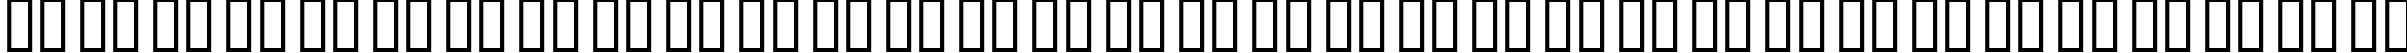 Пример написания русского алфавита шрифтом WarnerLogoFontNine